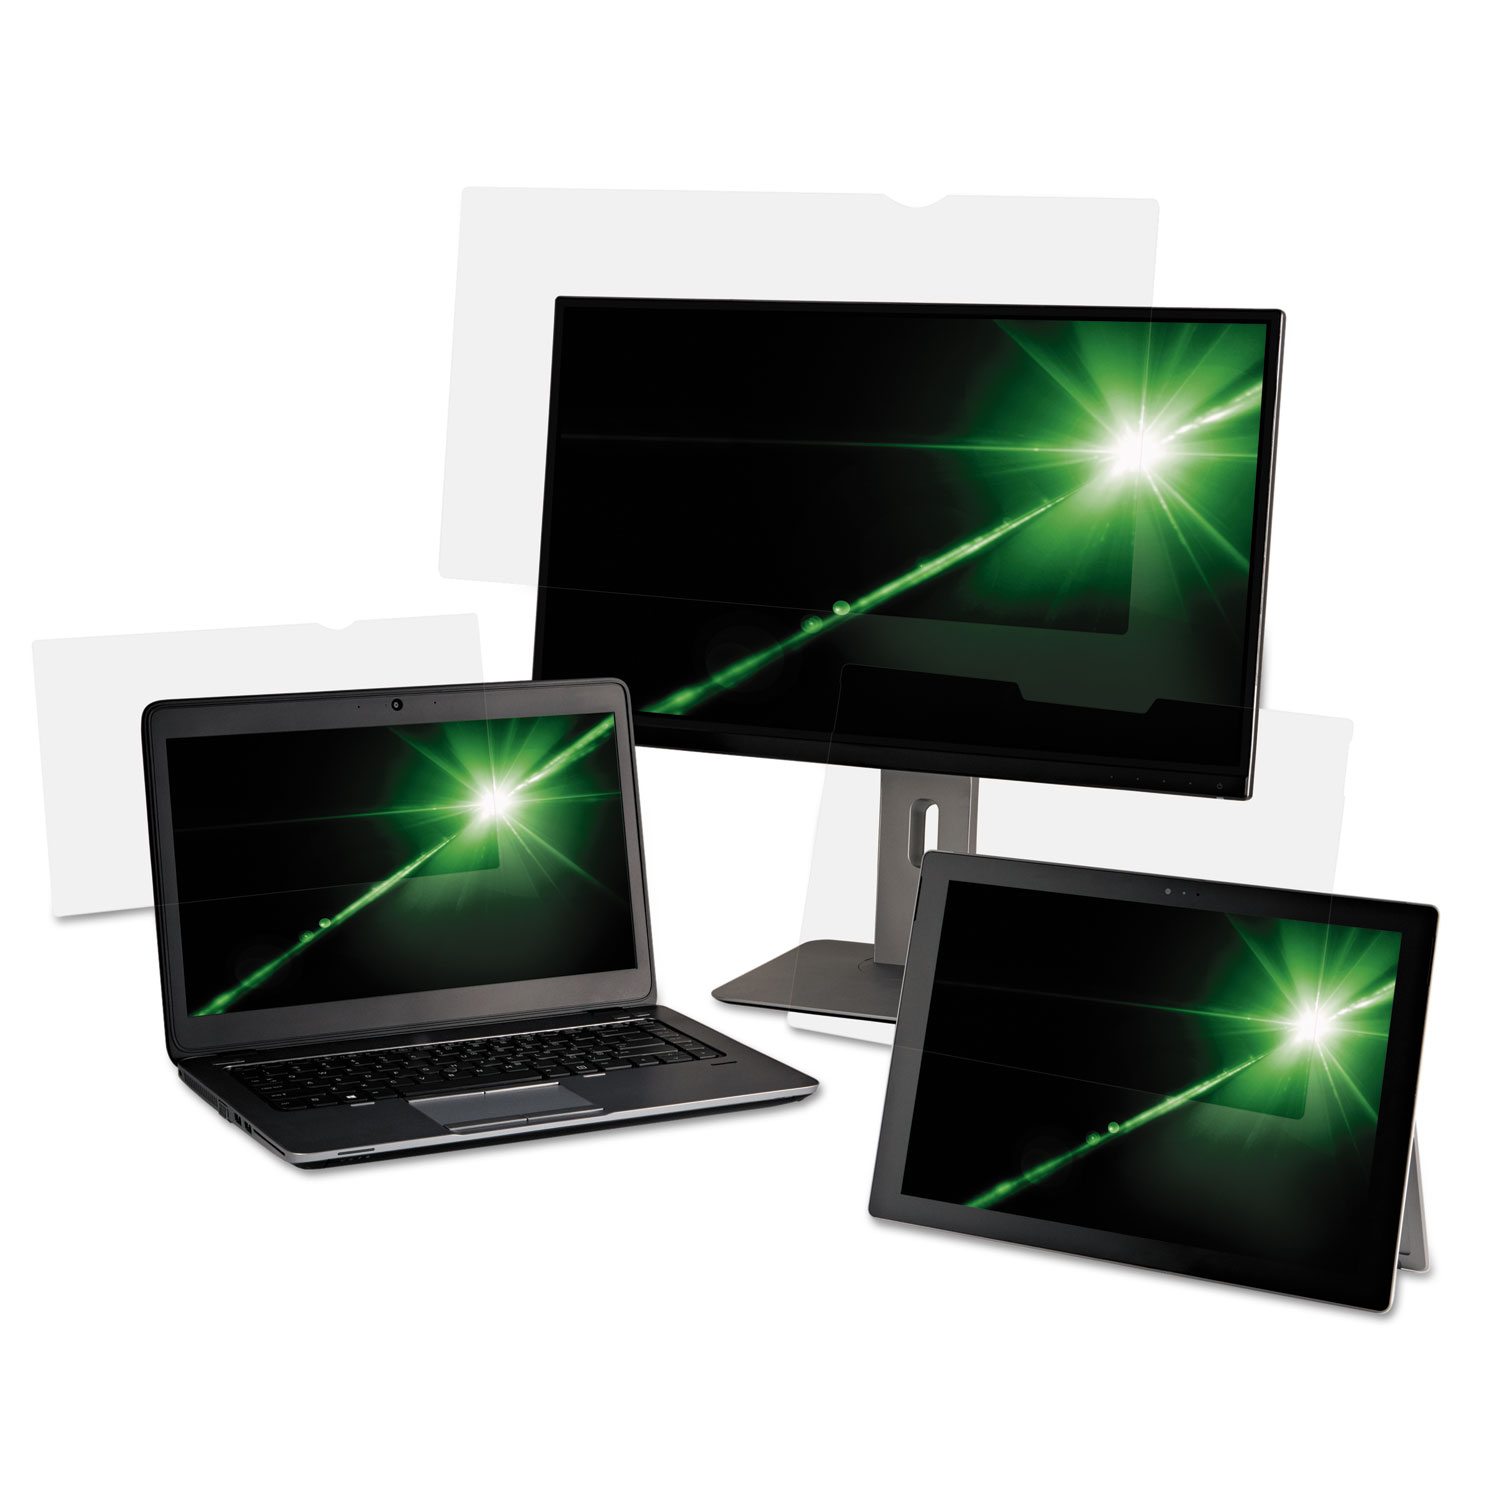  3M AG140W9B Antiglare Frameless Filter for 14 Widescreen Laptop, 16:9 Aspect Ratio (MMMAG140W9) 